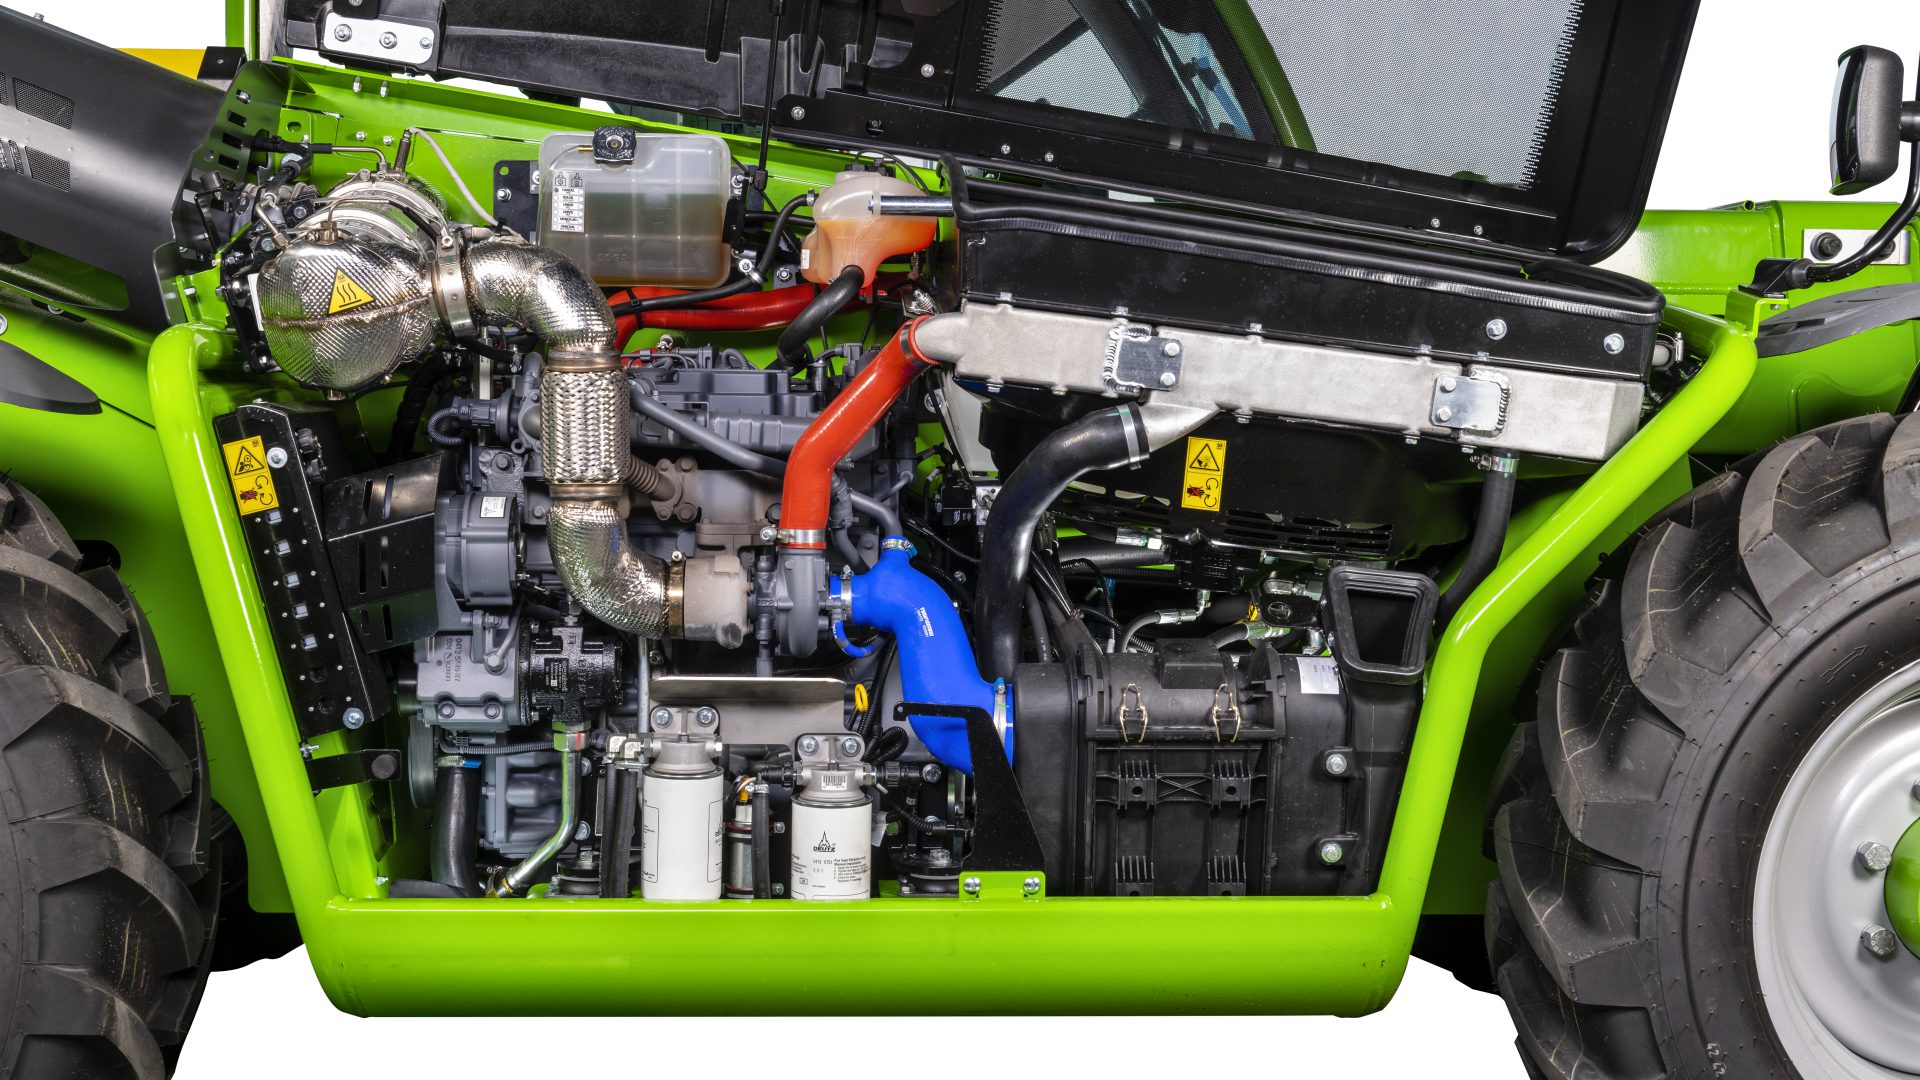 Il motore del Merlo P30.10 è un Kohler Stage V che unisce compattezza, prestazioni e semplicità